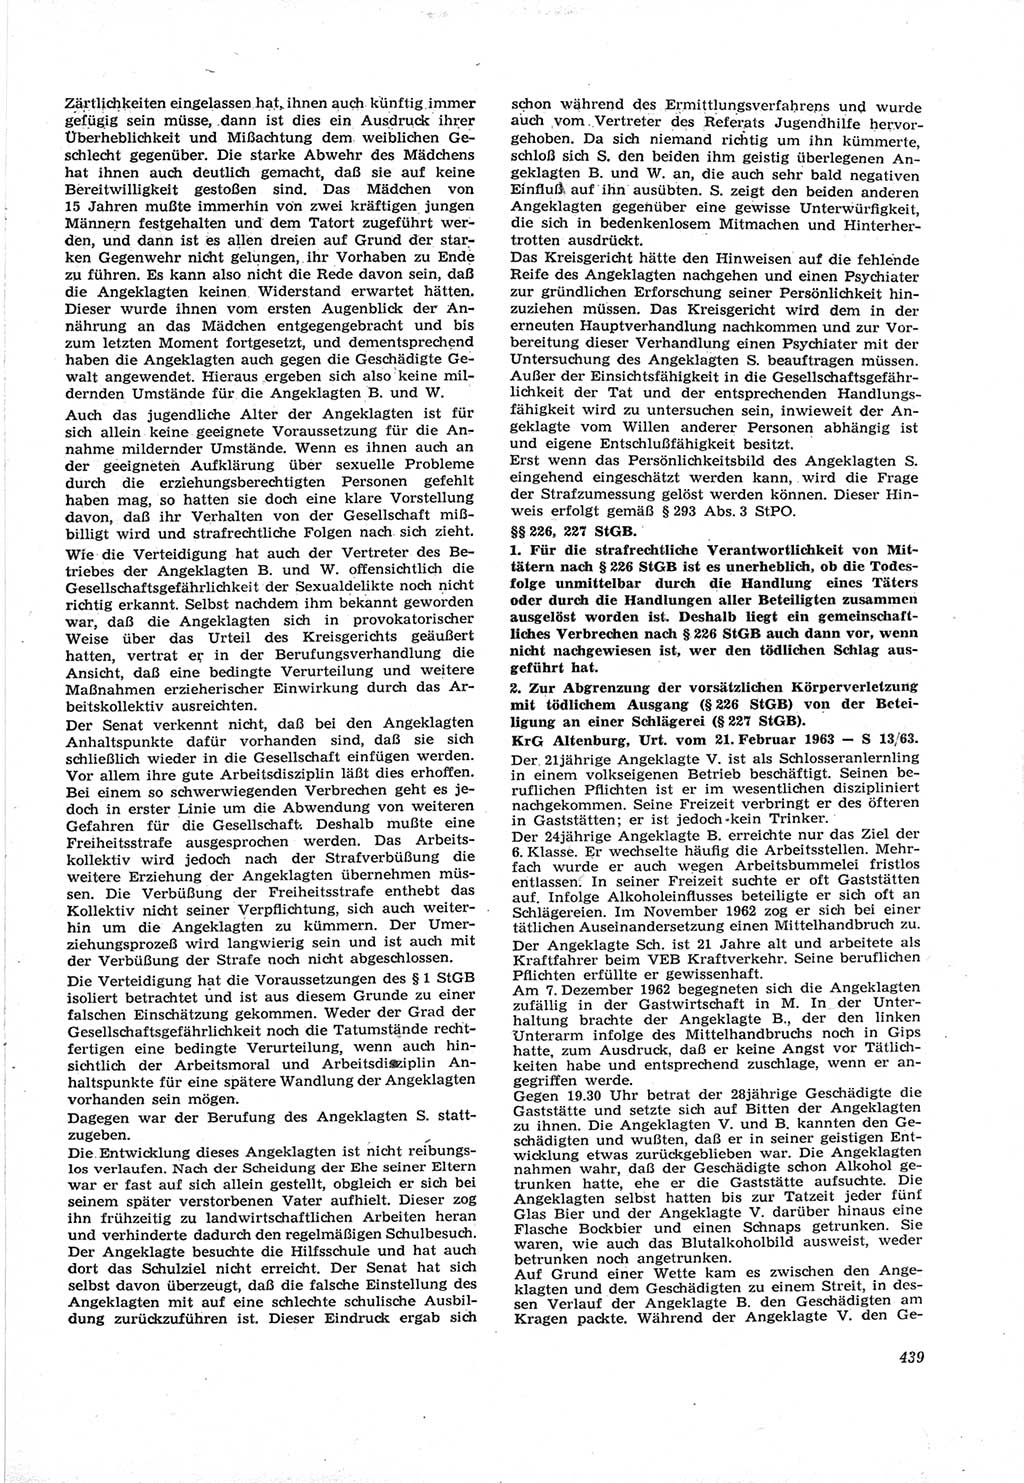 Neue Justiz (NJ), Zeitschrift für Recht und Rechtswissenschaft [Deutsche Demokratische Republik (DDR)], 17. Jahrgang 1963, Seite 439 (NJ DDR 1963, S. 439)